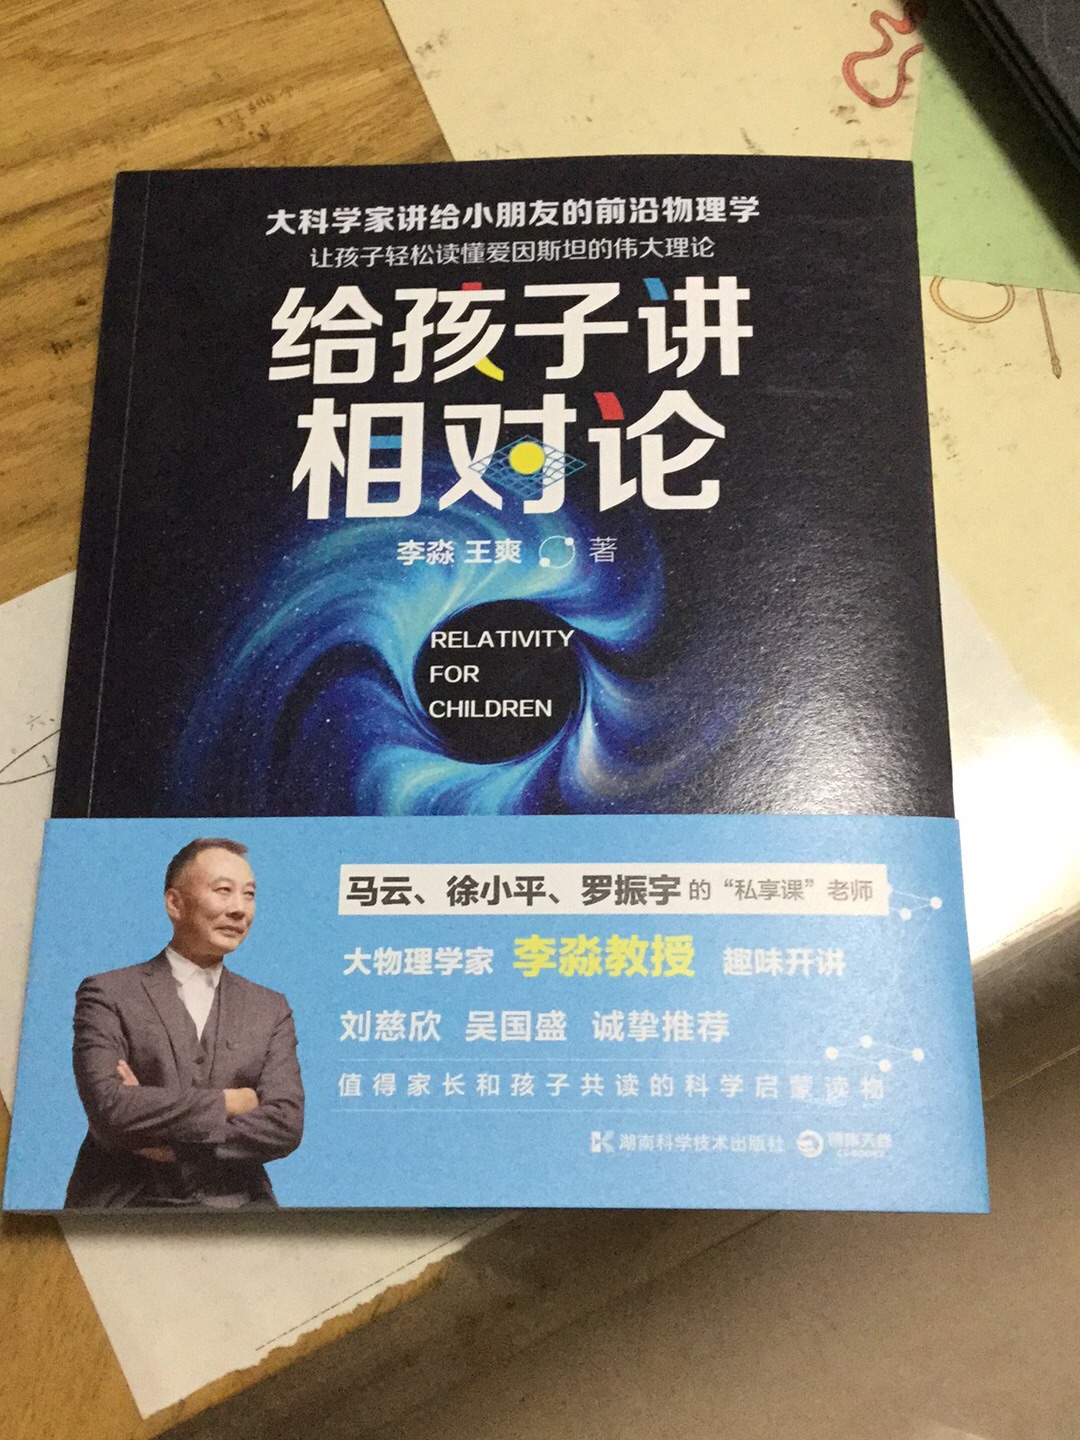 学物理之前先提高兴趣 不然学了也不明白 谢谢李淼老师写的这套书